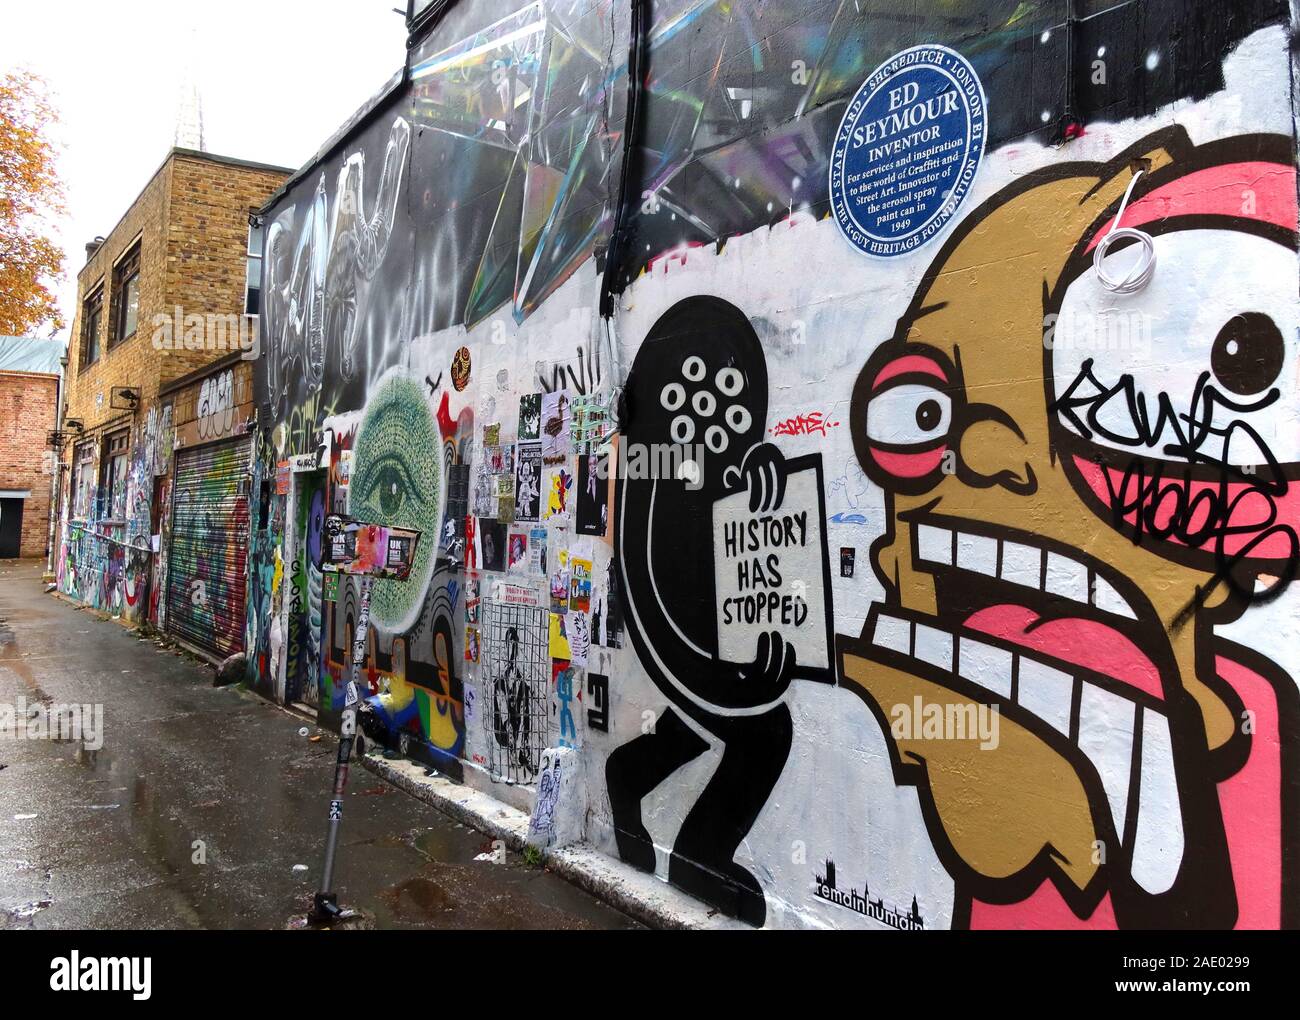 La storia si è fermata, ed Seymour, Brick Lane, arte e graffiti, Shoreditch, Tower Hamlets, East End, Londra, Sud Est, Inghilterra, Regno Unito, E1 6QL Foto Stock